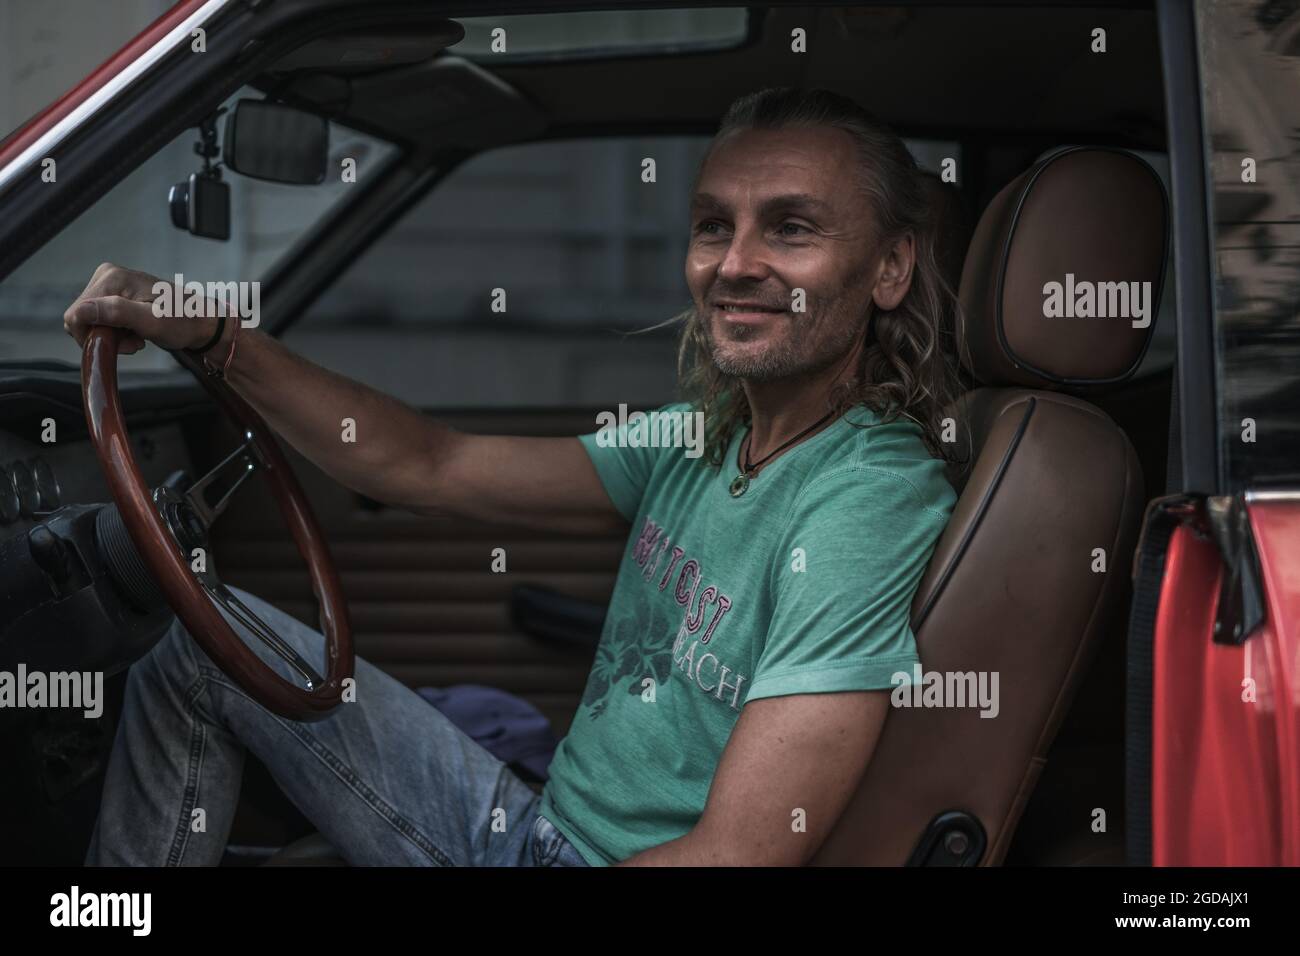 Porträt eines reifen hübschen Mannes, der in einem roten Auto im alten Stil sitzt, das Lenkrad hält und lächelt. Lange graue Haare. Rotes Auto im Stil der 1970er Jahre. Hohe Qualität Stockfoto